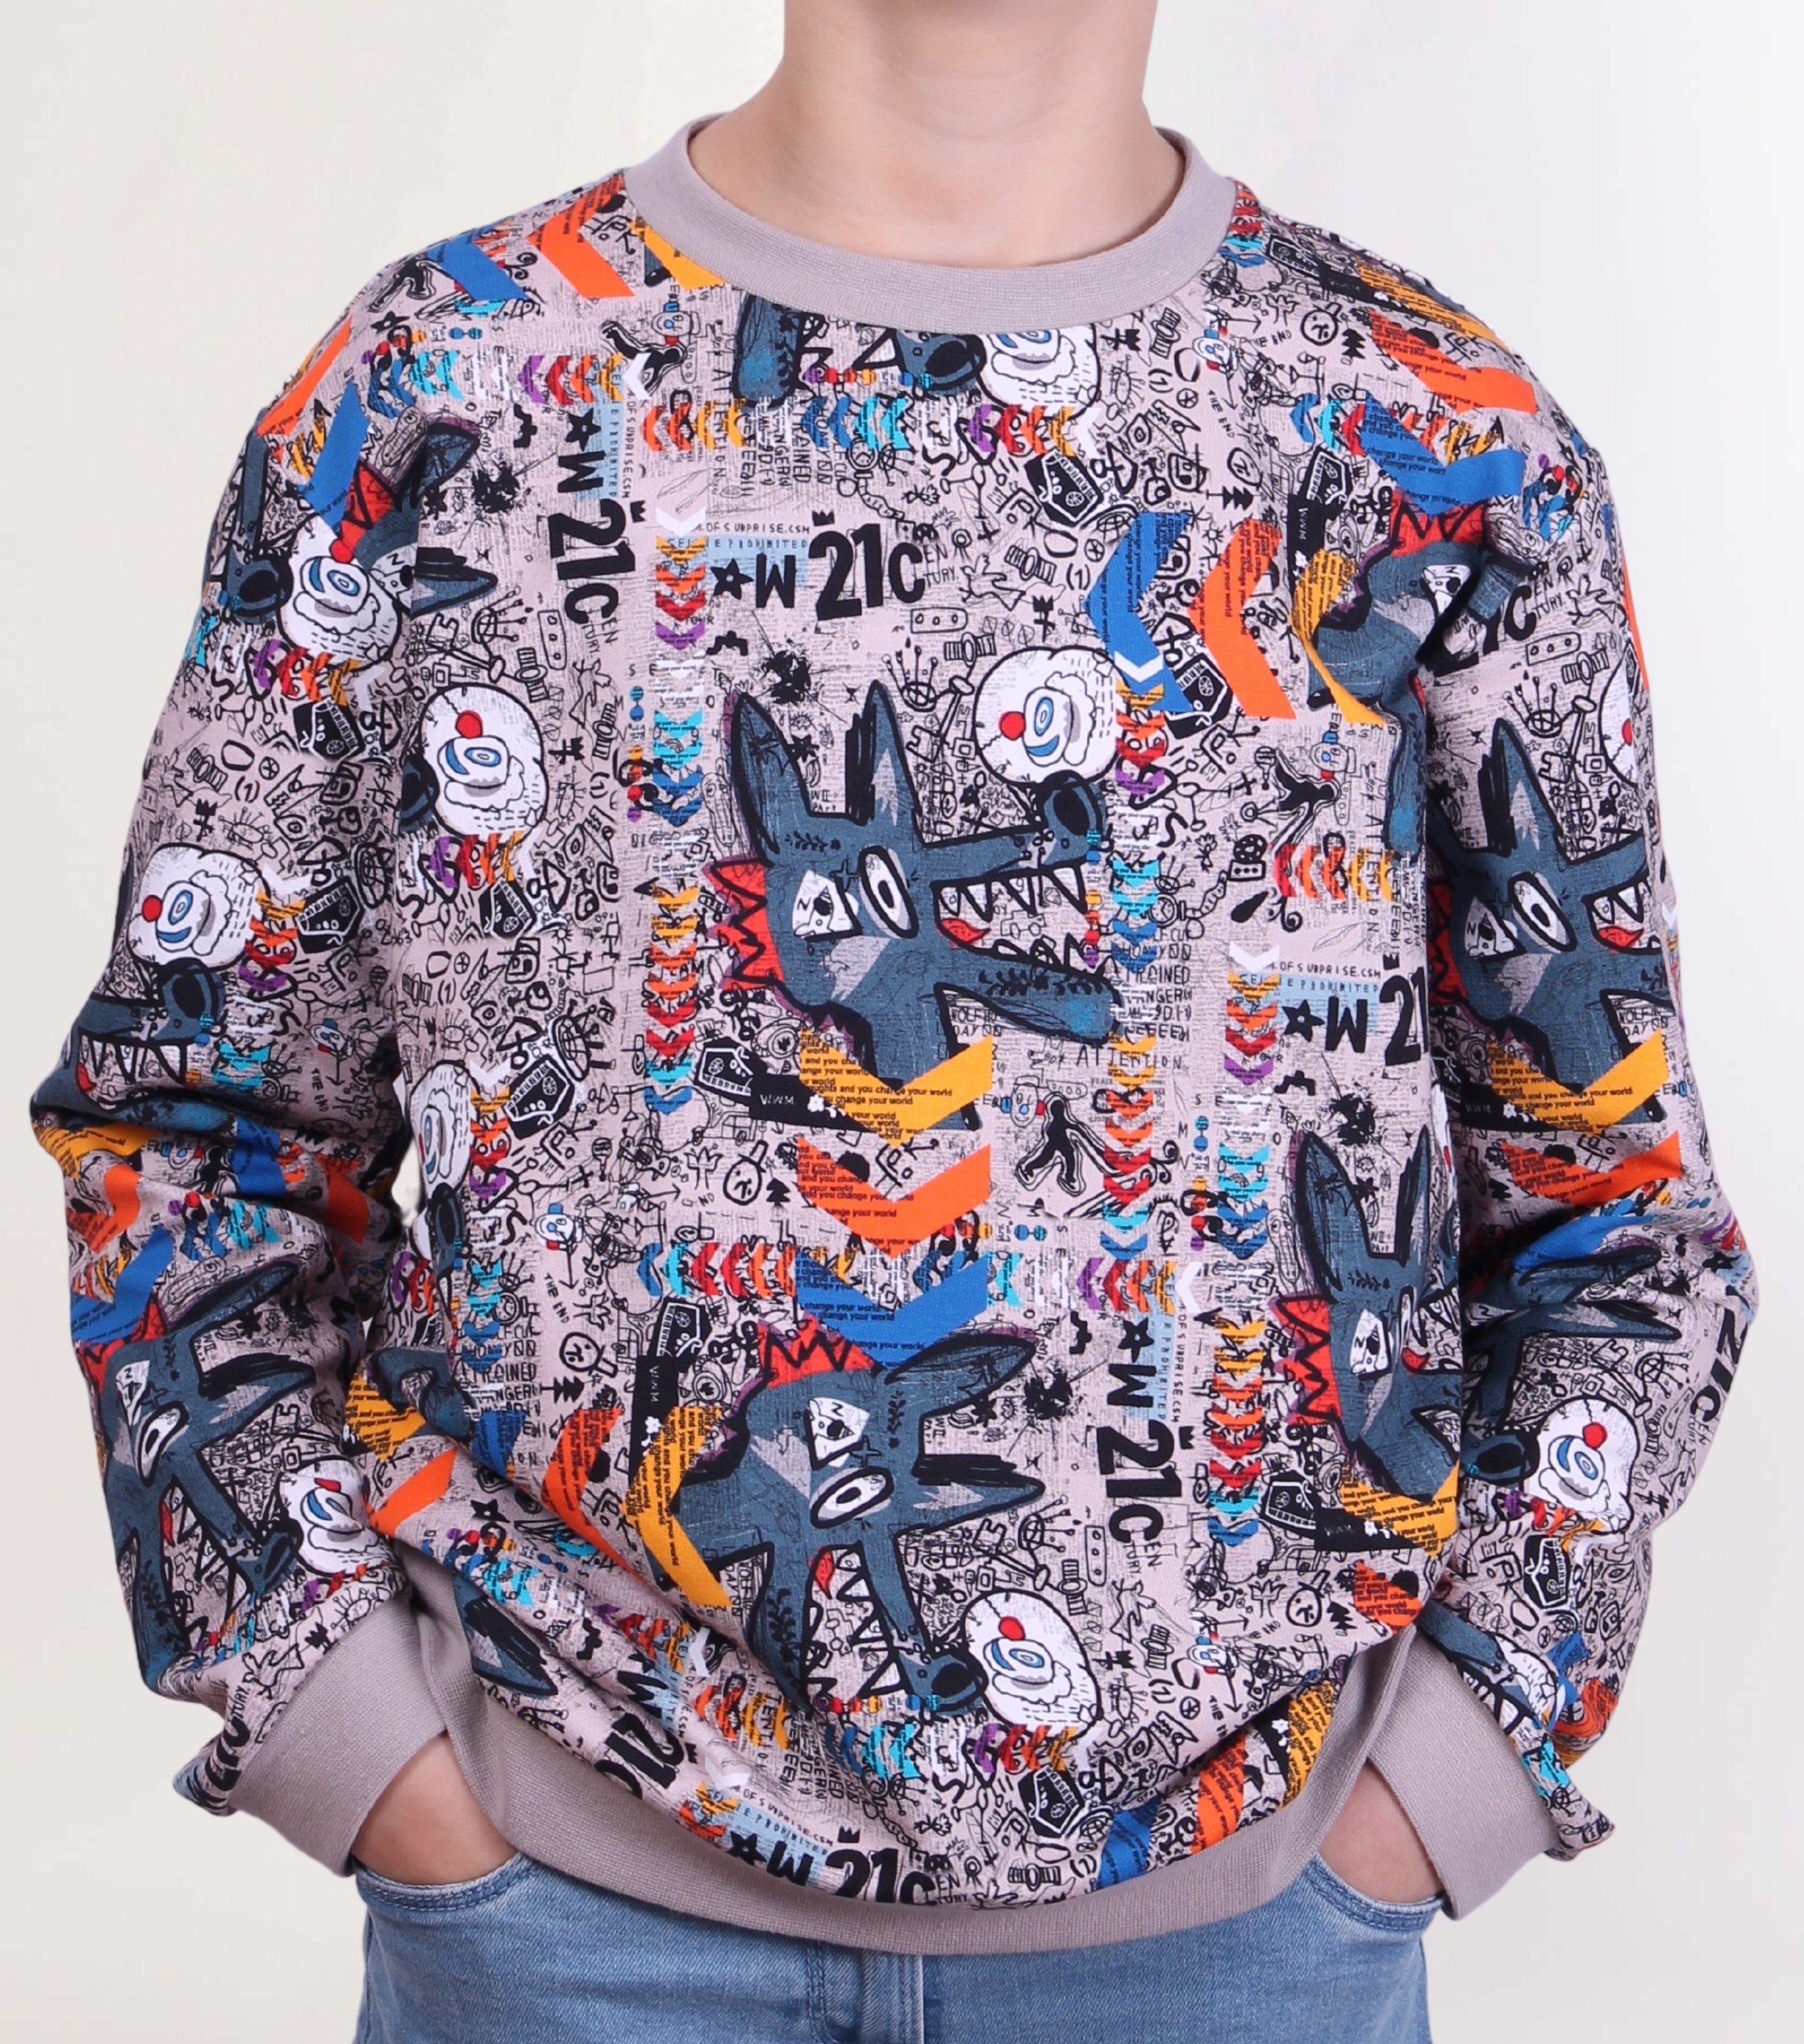 coolismo Sweater Kinder Sweatshirt Jungen Pullover mit farbigem Grafitti-Print Baumwolle, europäische Produktion